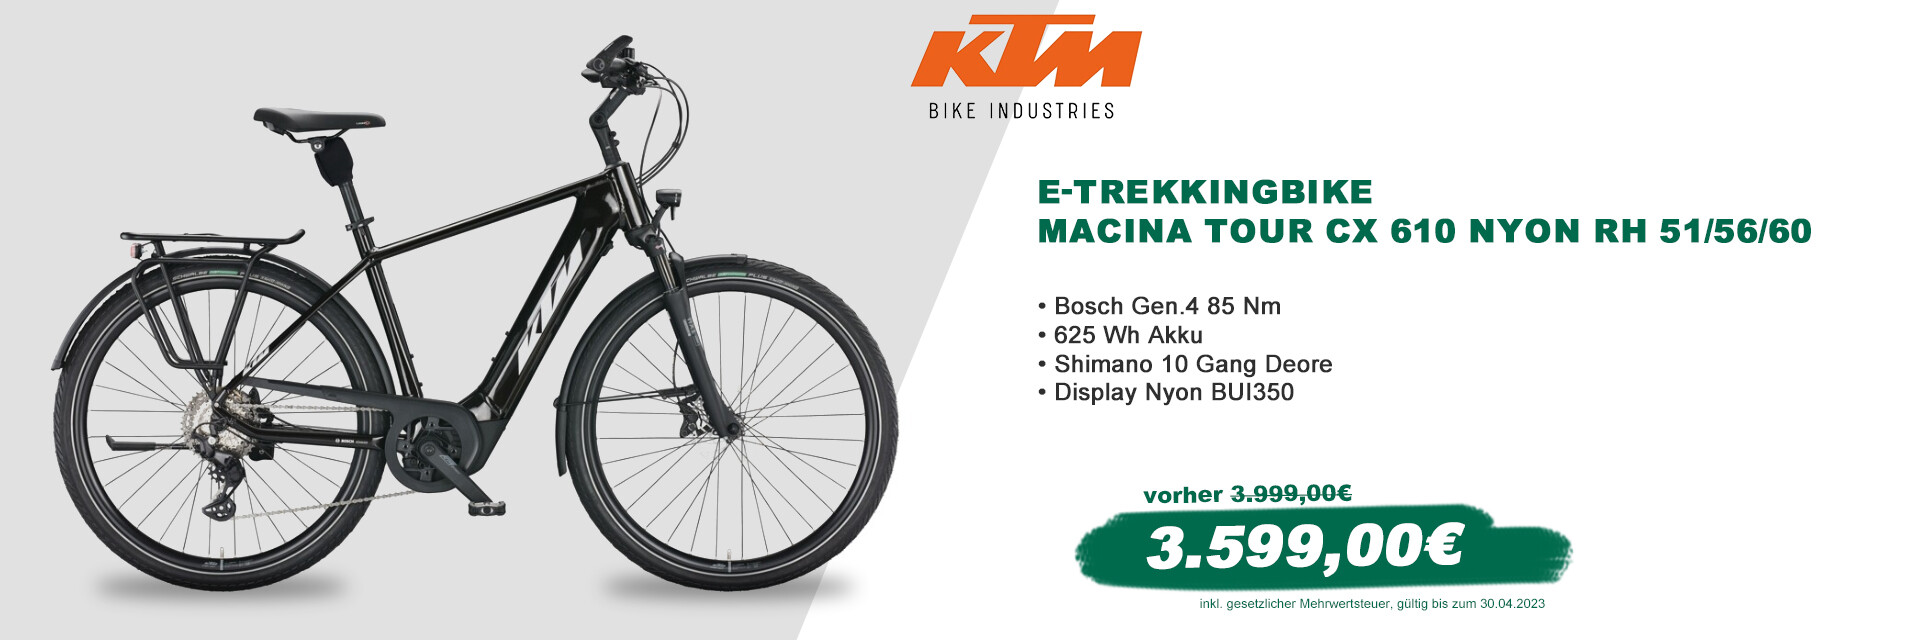 KTM Macina Tour CX 610 Nyon RH 51/56/60